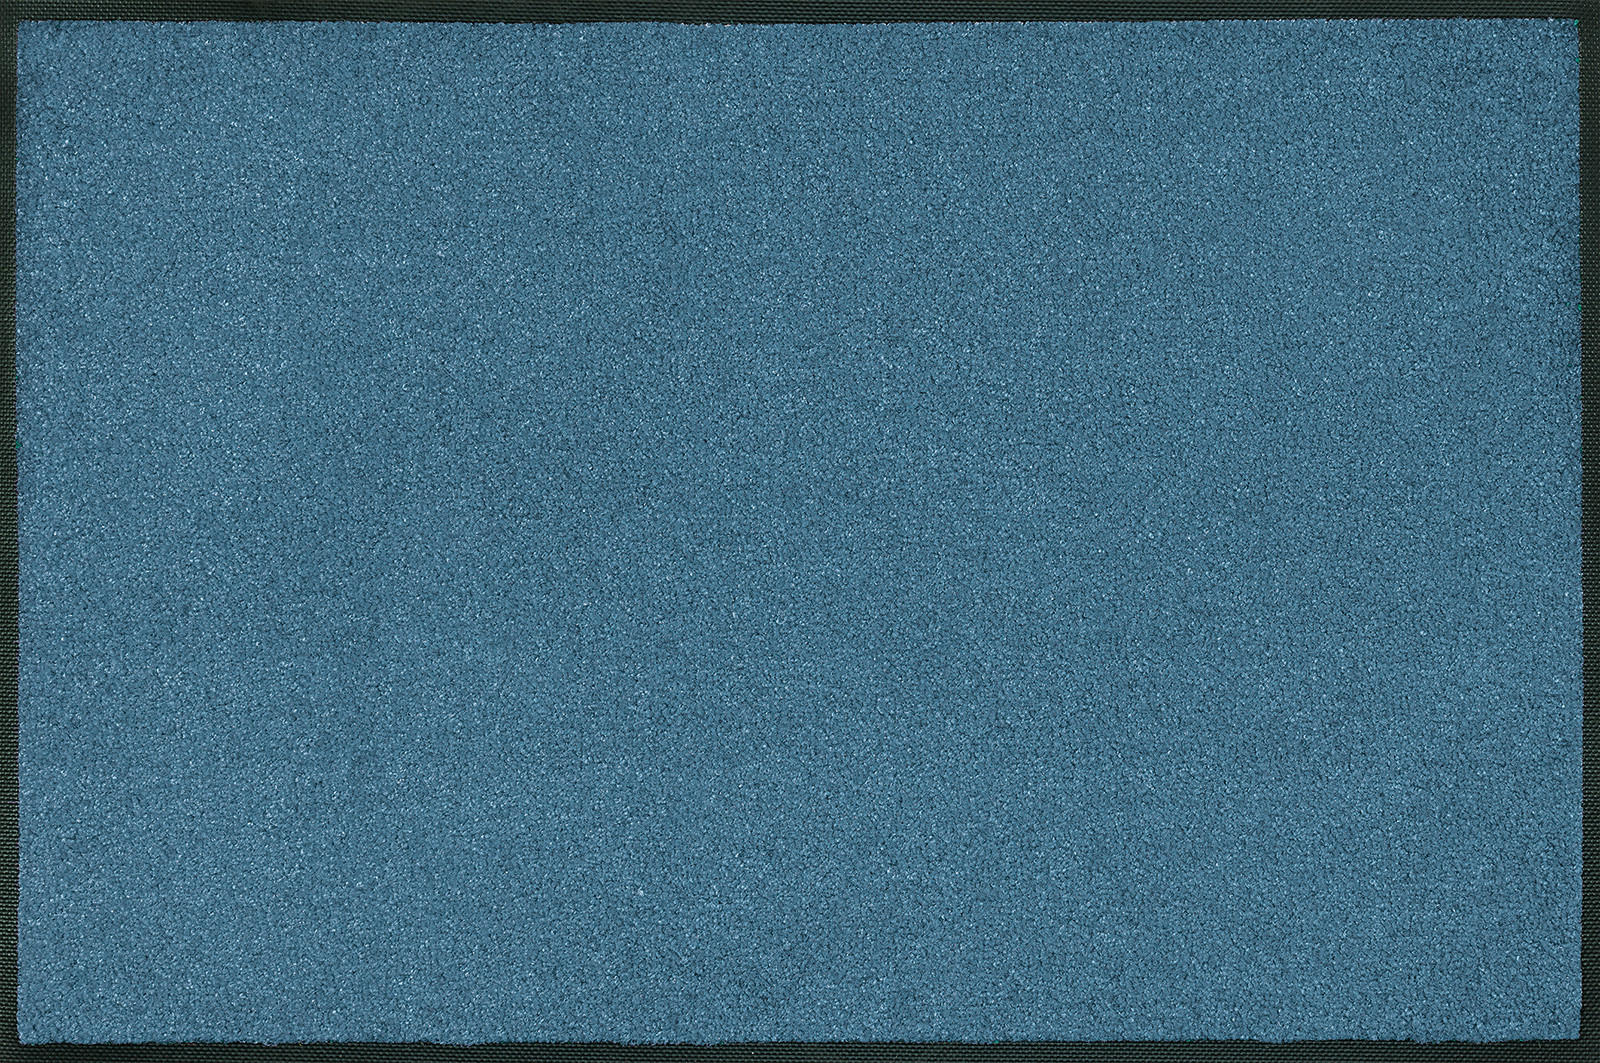 KÜCHENTEPPICH 75/120 cm Steel Blue  - Blau, KONVENTIONELL, Kunststoff (75/120cm) - wash+dry